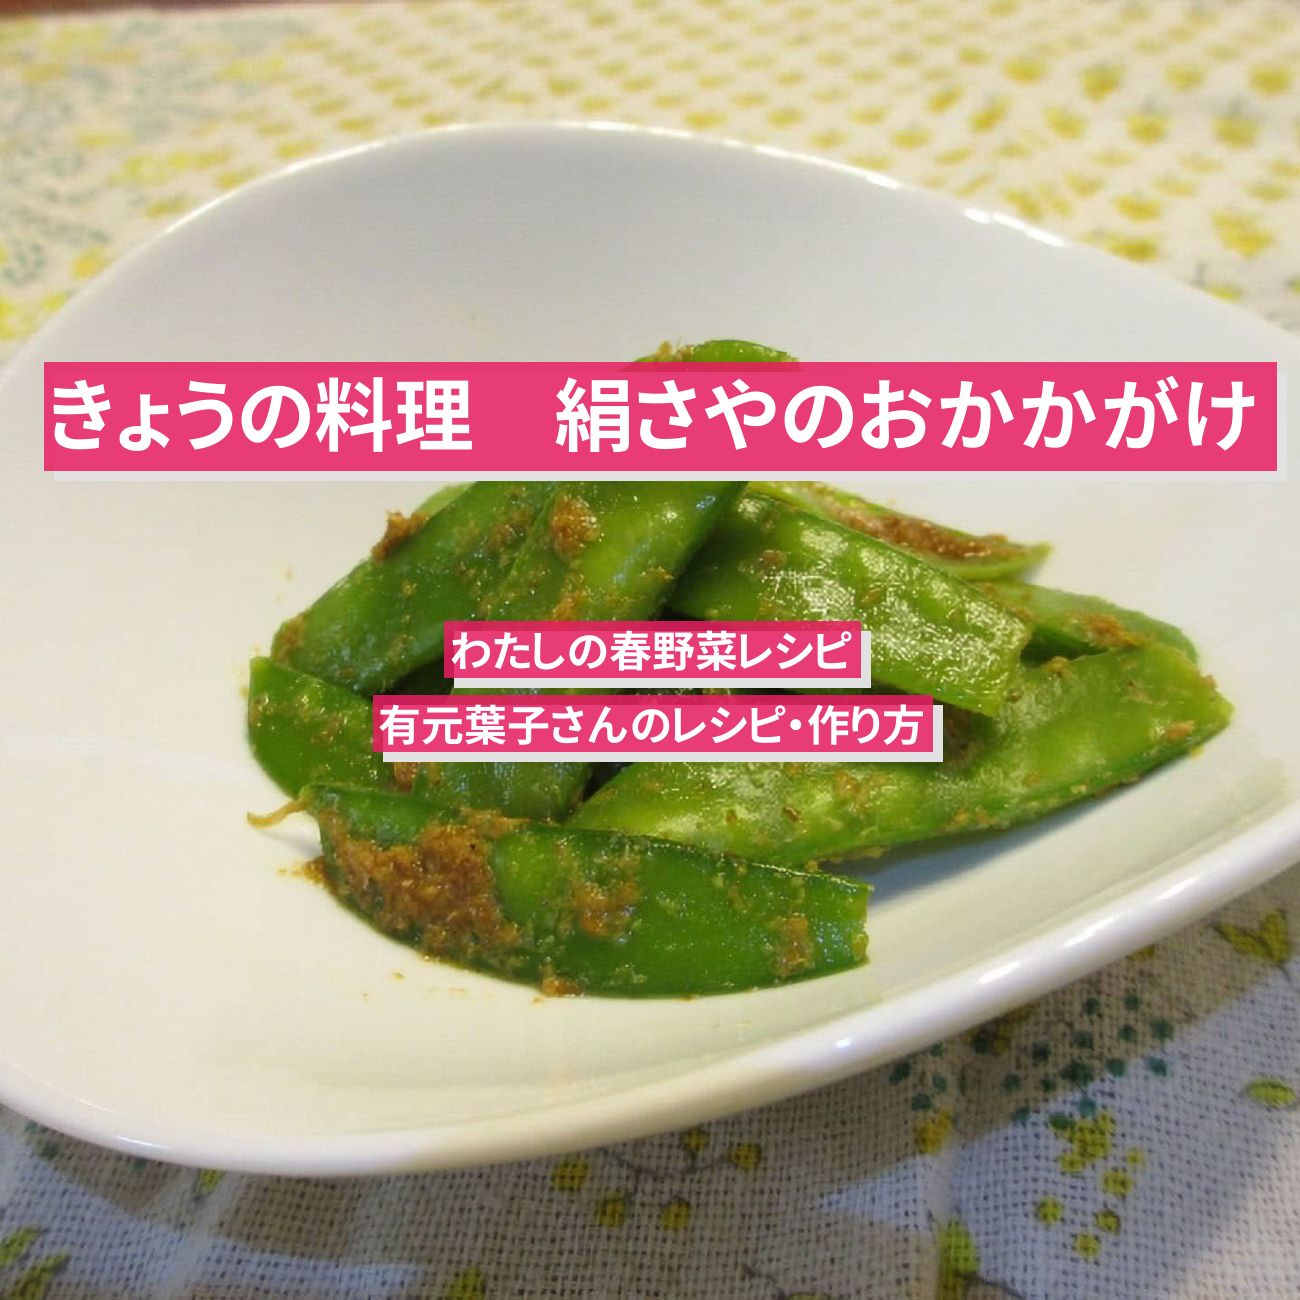 【きょうの料理】『絹さやのおかかがけ』有元葉子さんのレシピ・作り方